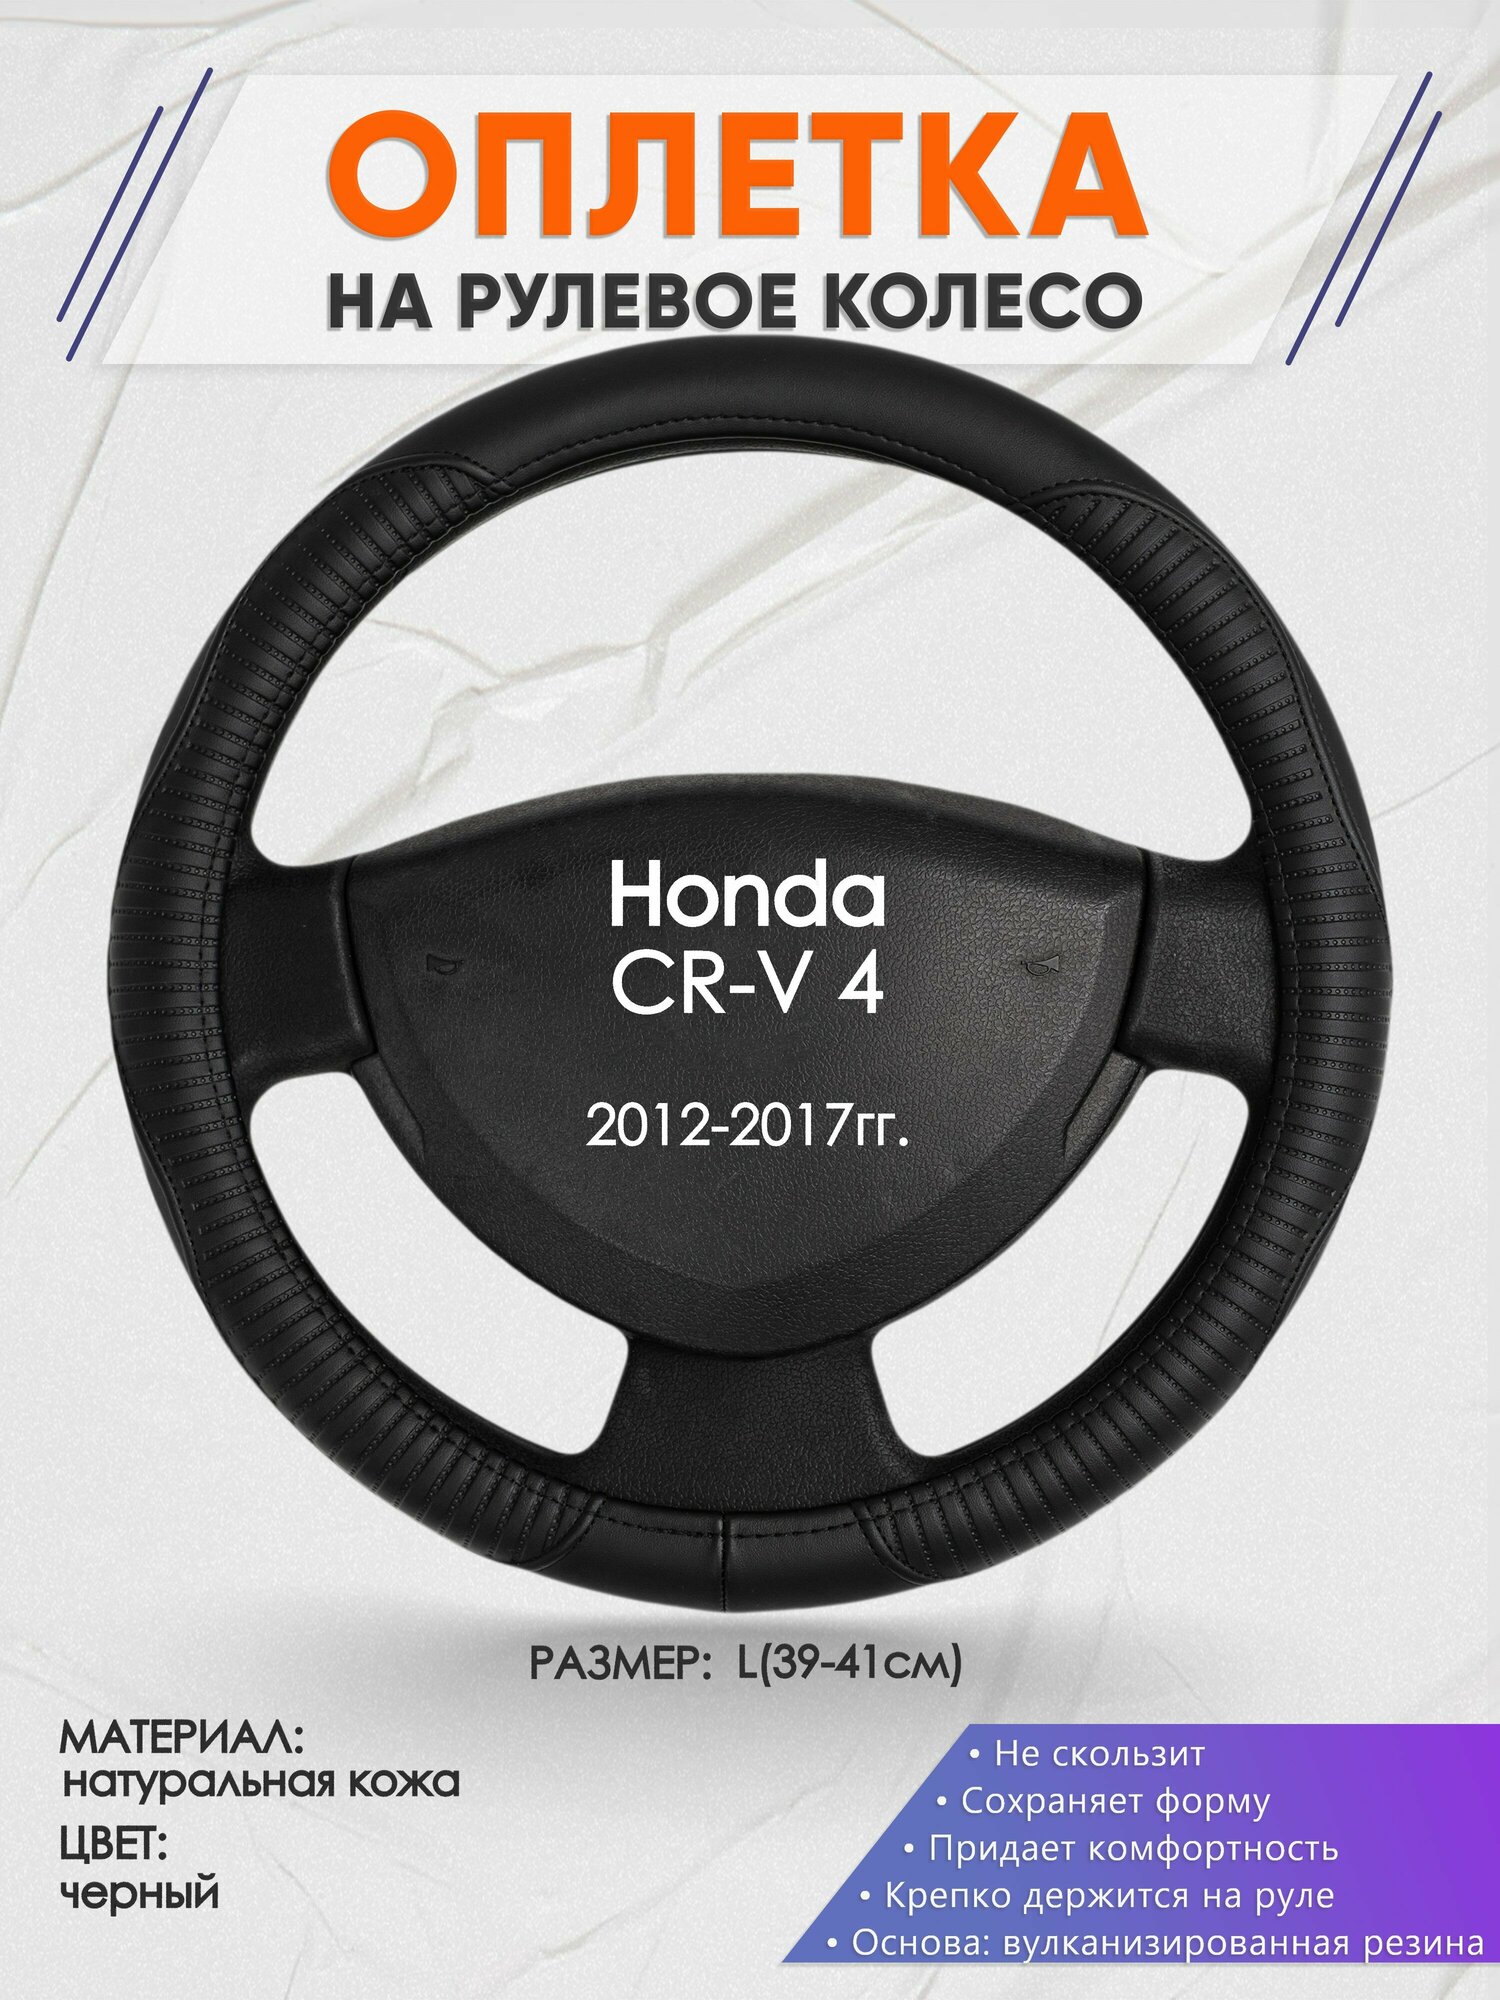 Оплетка на руль для Honda CR-V 4(Хонда срв 4) 2012-2017, L(39-41см), Натуральная кожа 22